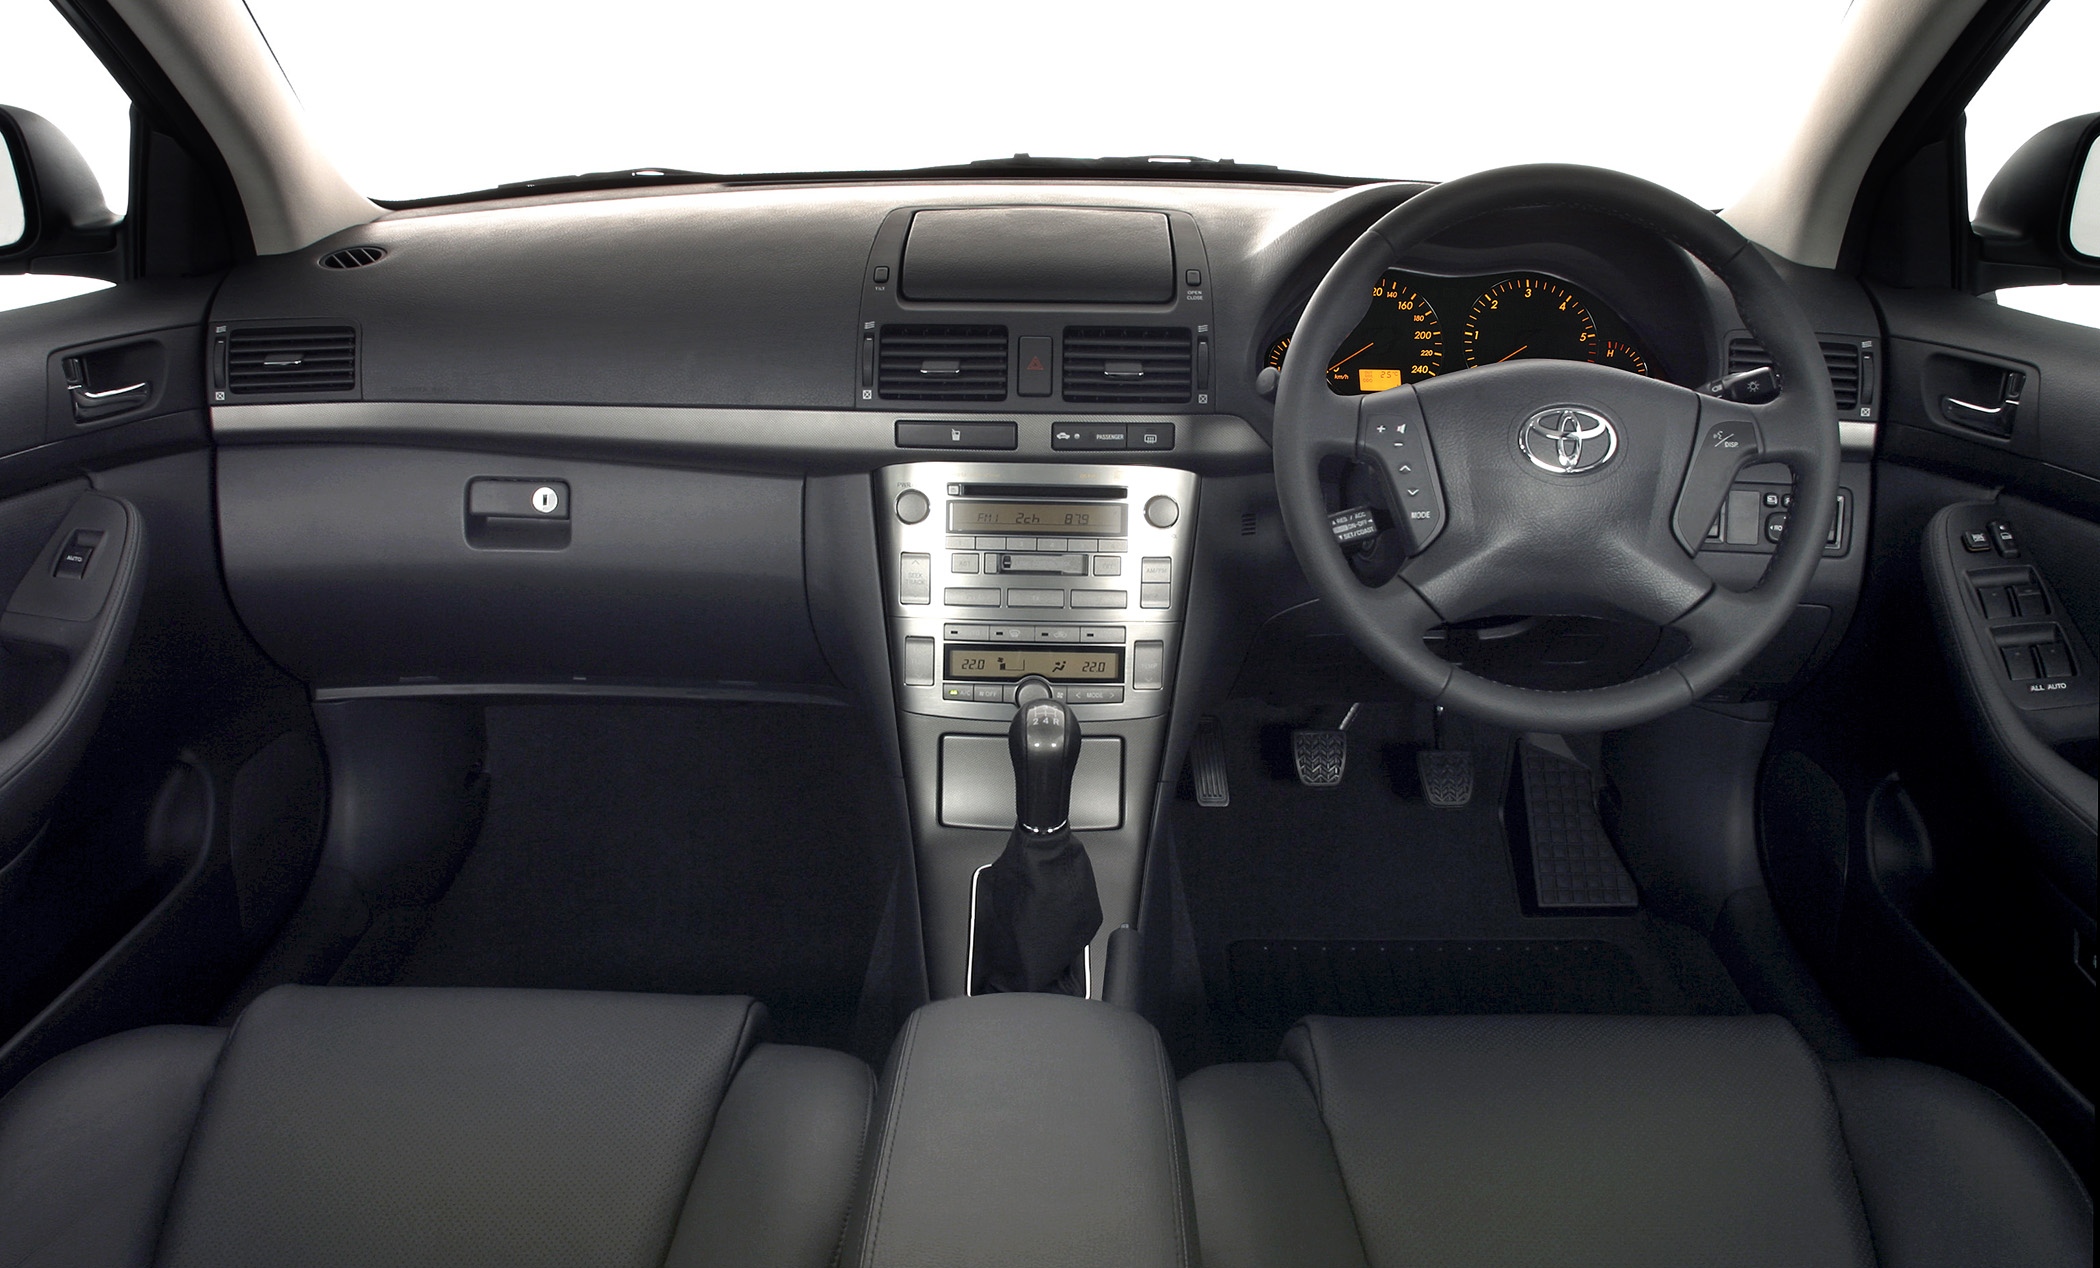 Торпеда авенсис. Toyota Avensis 2006 Торпедо. Toyota Avensis 2007 Interior. Toyota Avensis 250 Торпедо. Toyota Avensis 2007 салон.